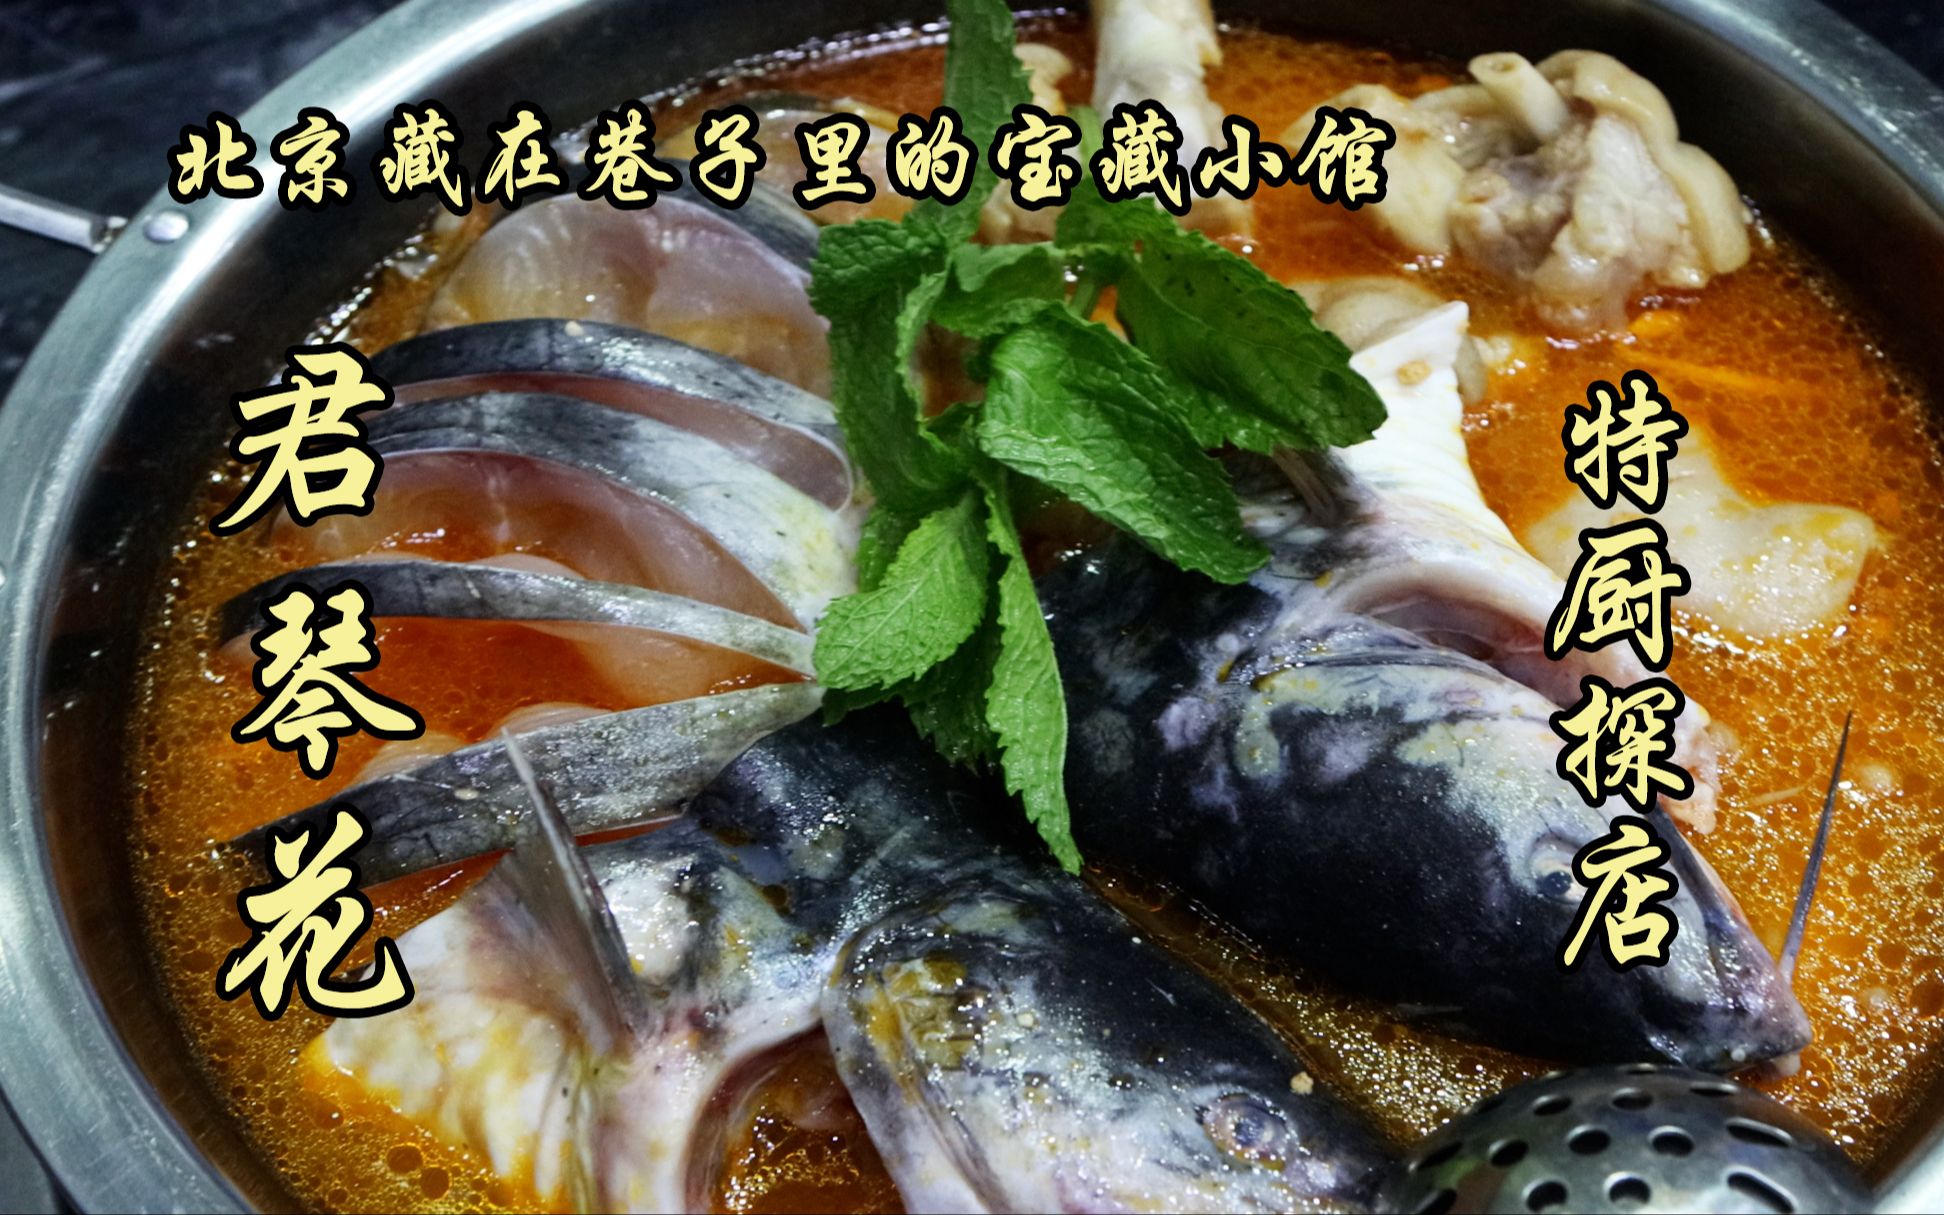 隋卞一探 |宝藏小馆！只有六张桌子的店让老隋体会到了贵州酸汤鱼的魅力!